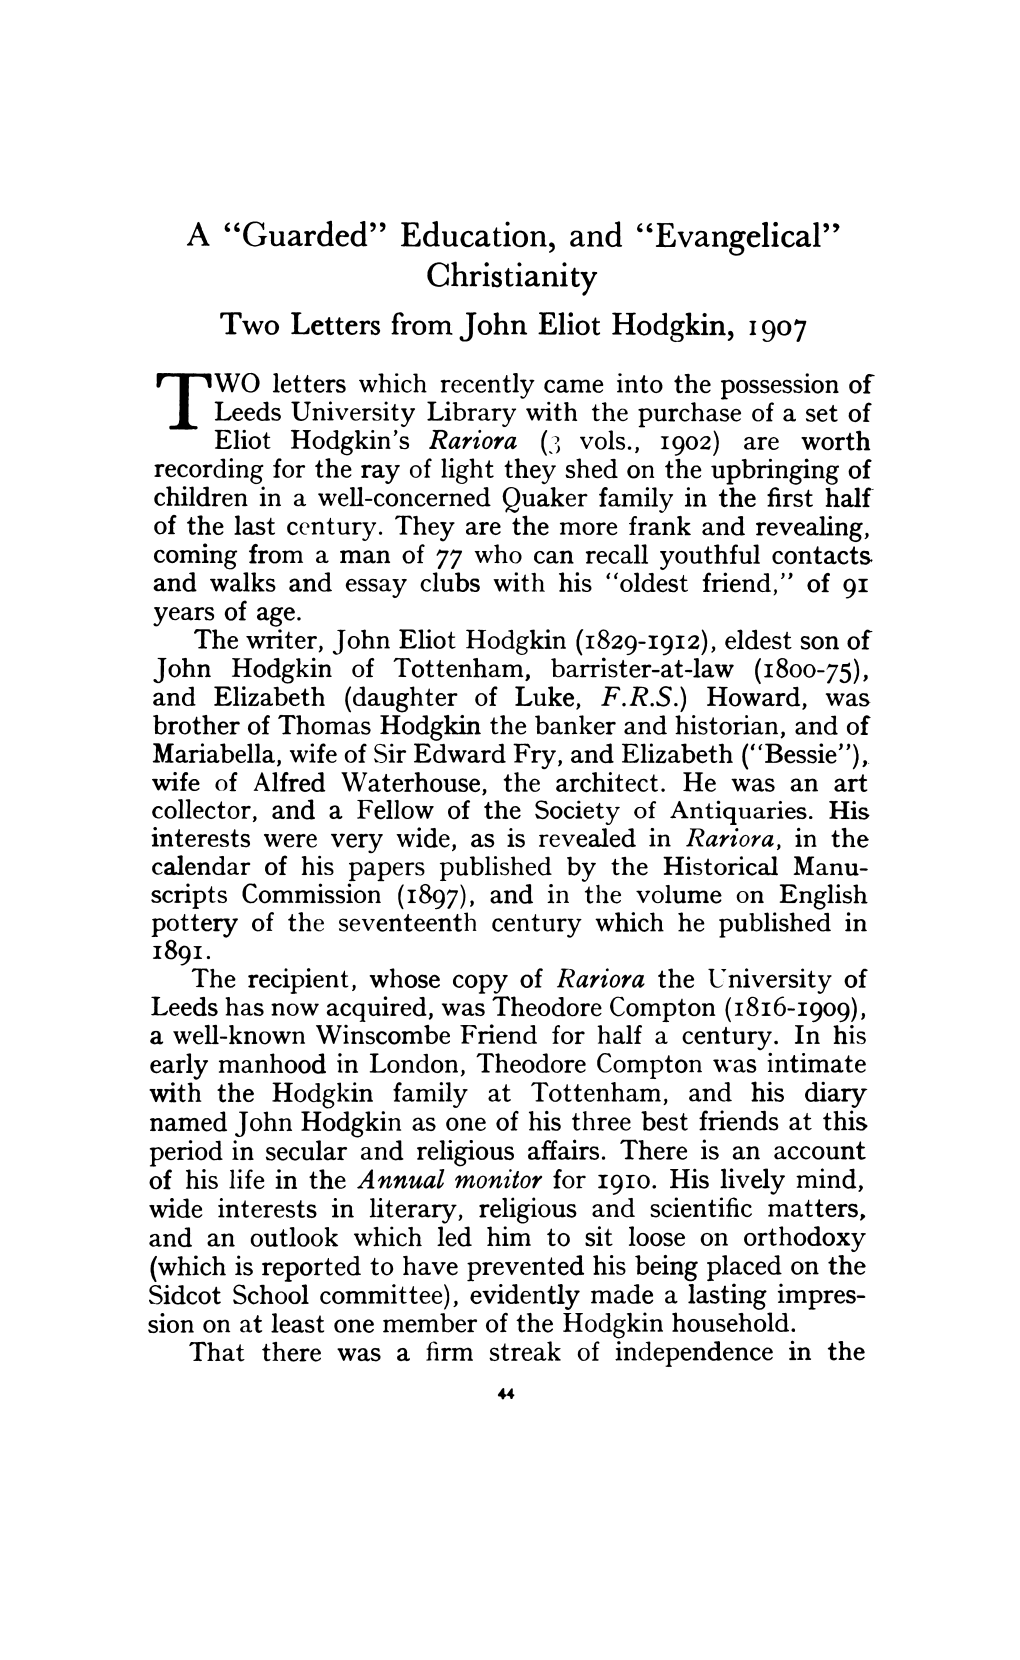 Evangelical" Christianity Two Letters from John Eliot Hodgkin, 1907